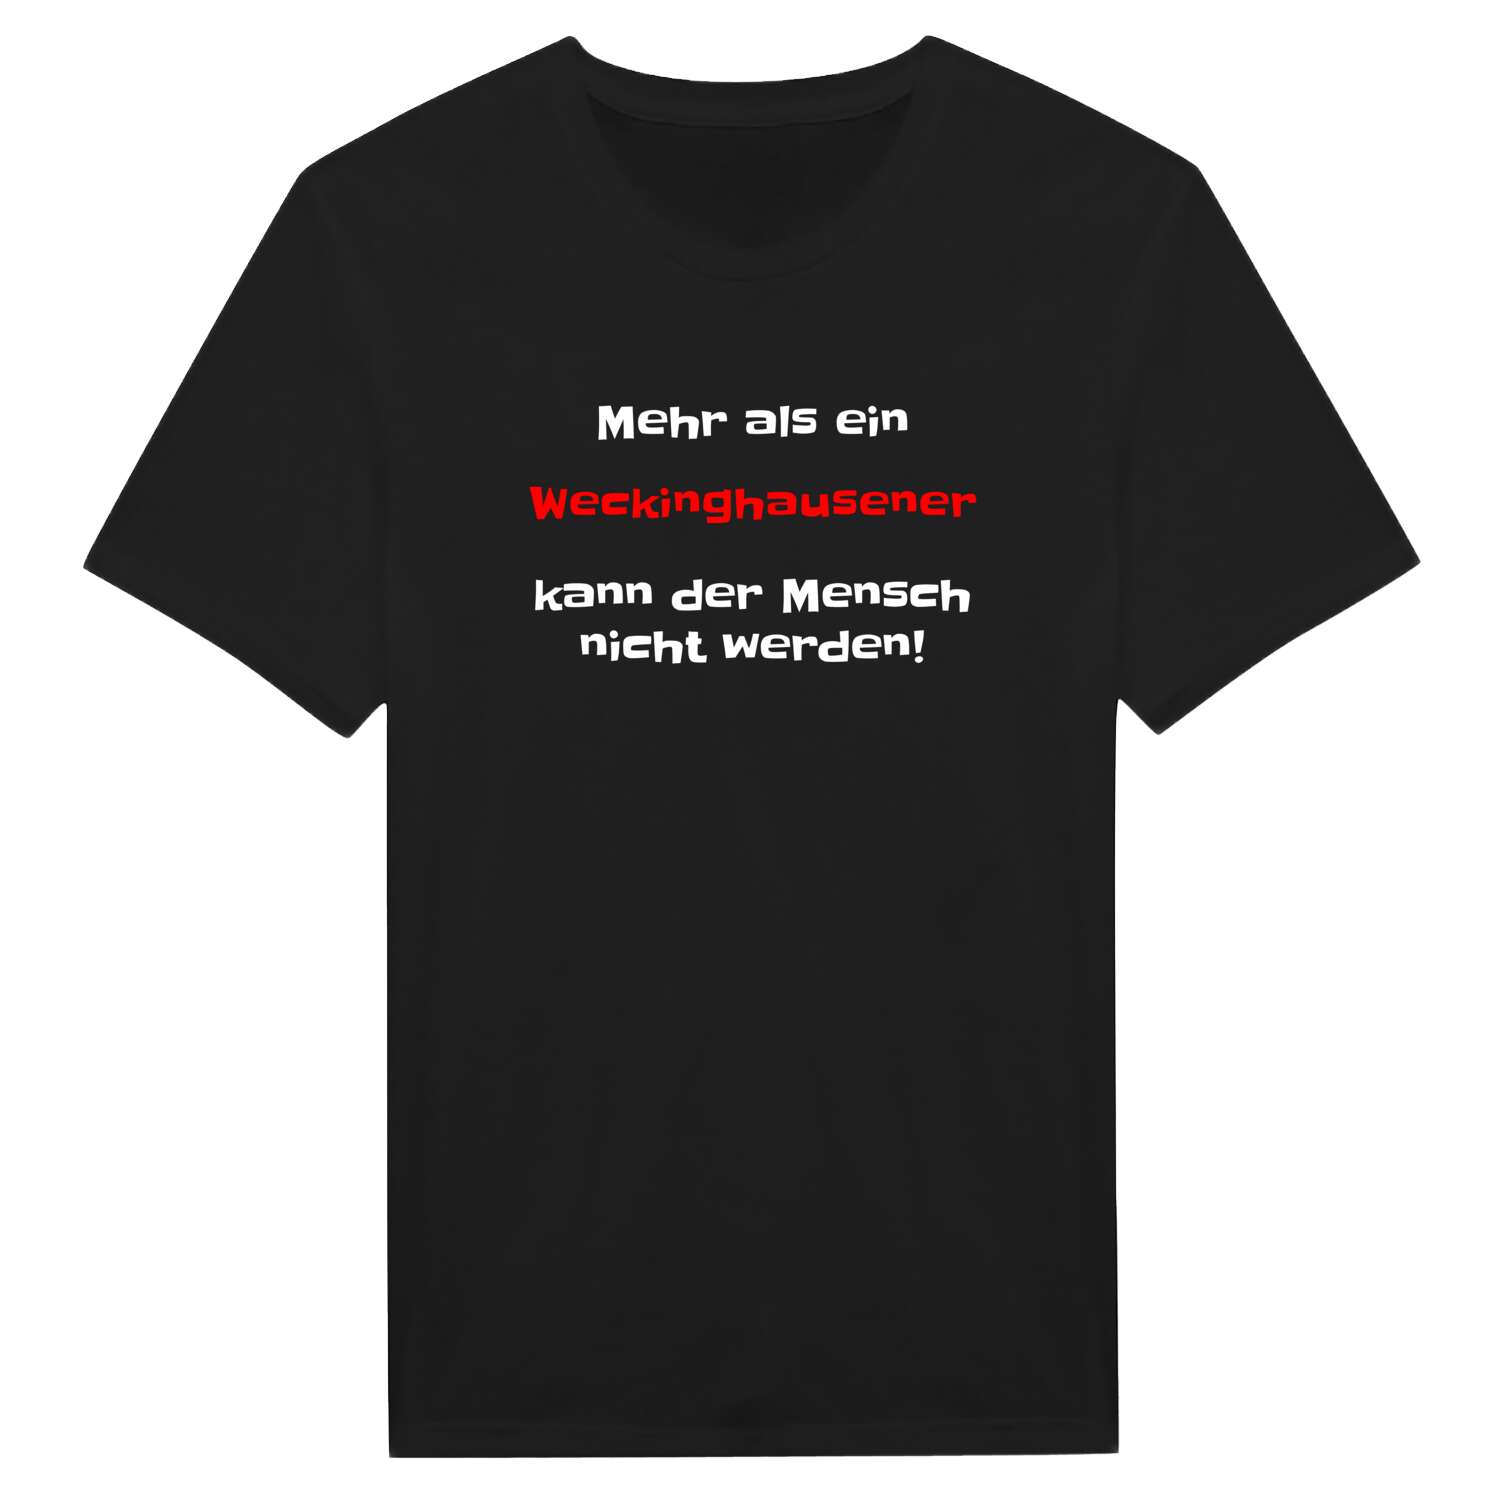 Weckinghausen T-Shirt »Mehr als ein«